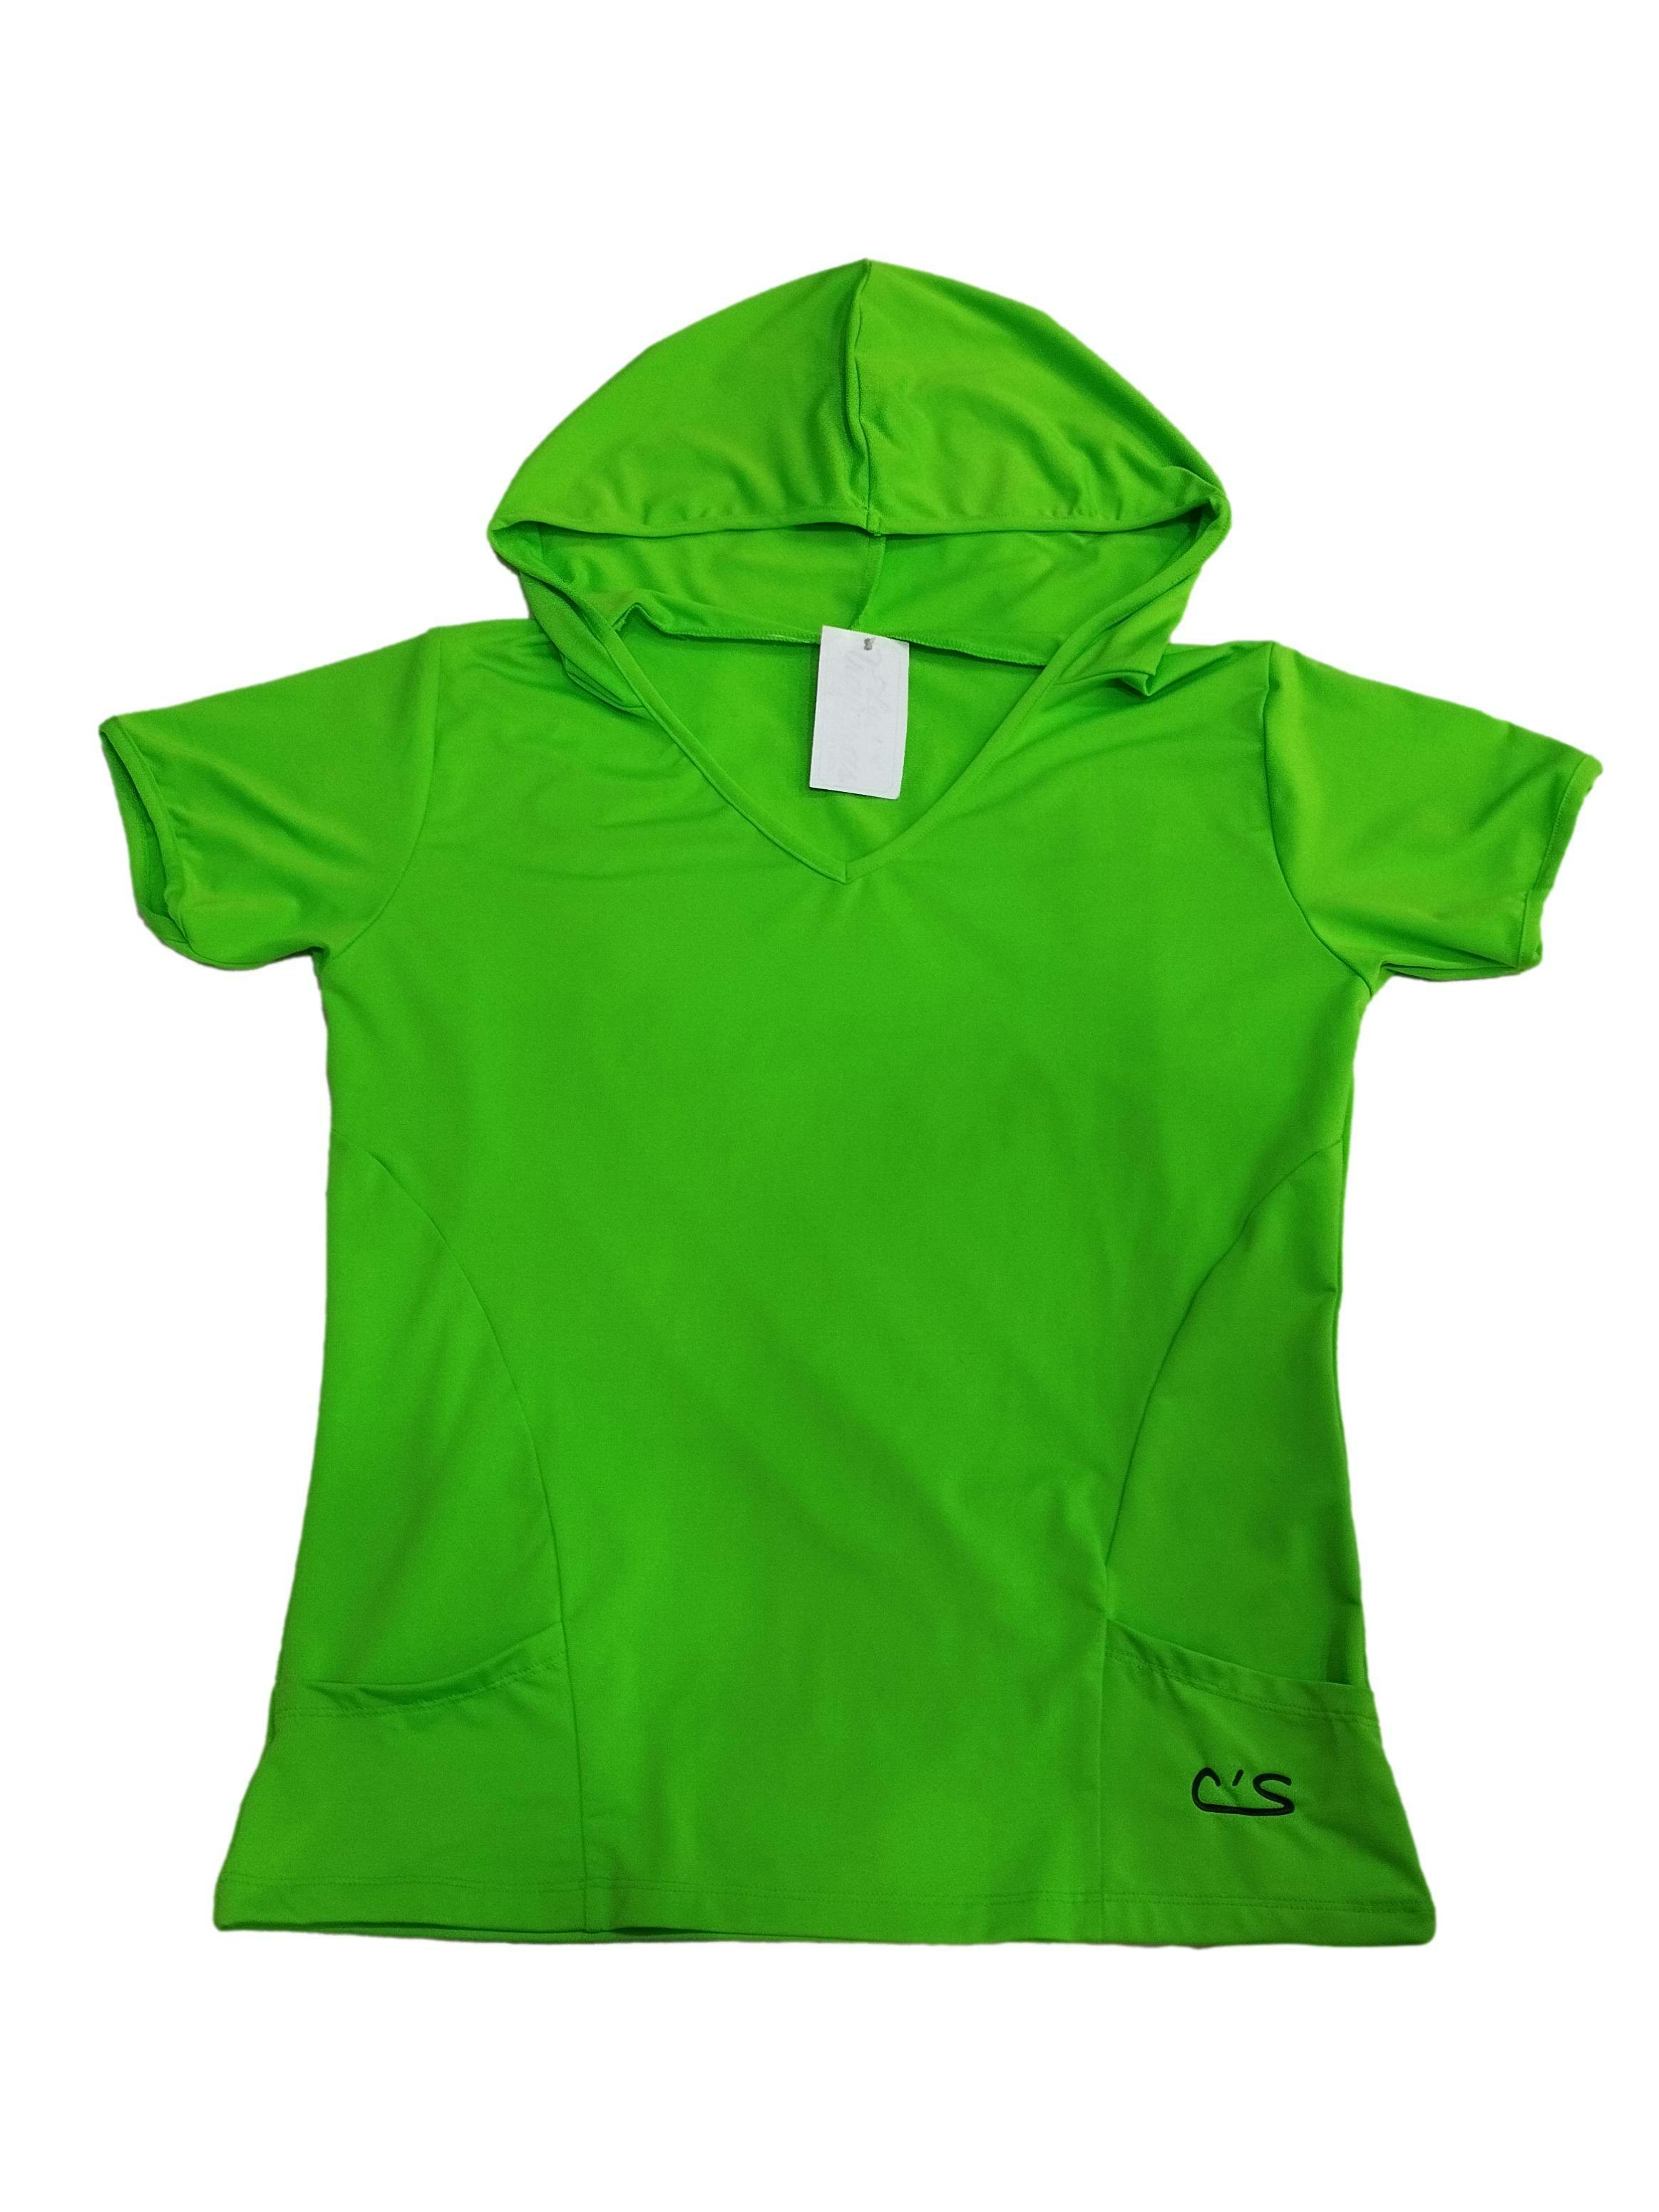 Polo deportivo verde neón con capucha, cuello en V, pequeños bolsillos delanteros, stretch. Busto: 90 cm, Largo: 61 cm